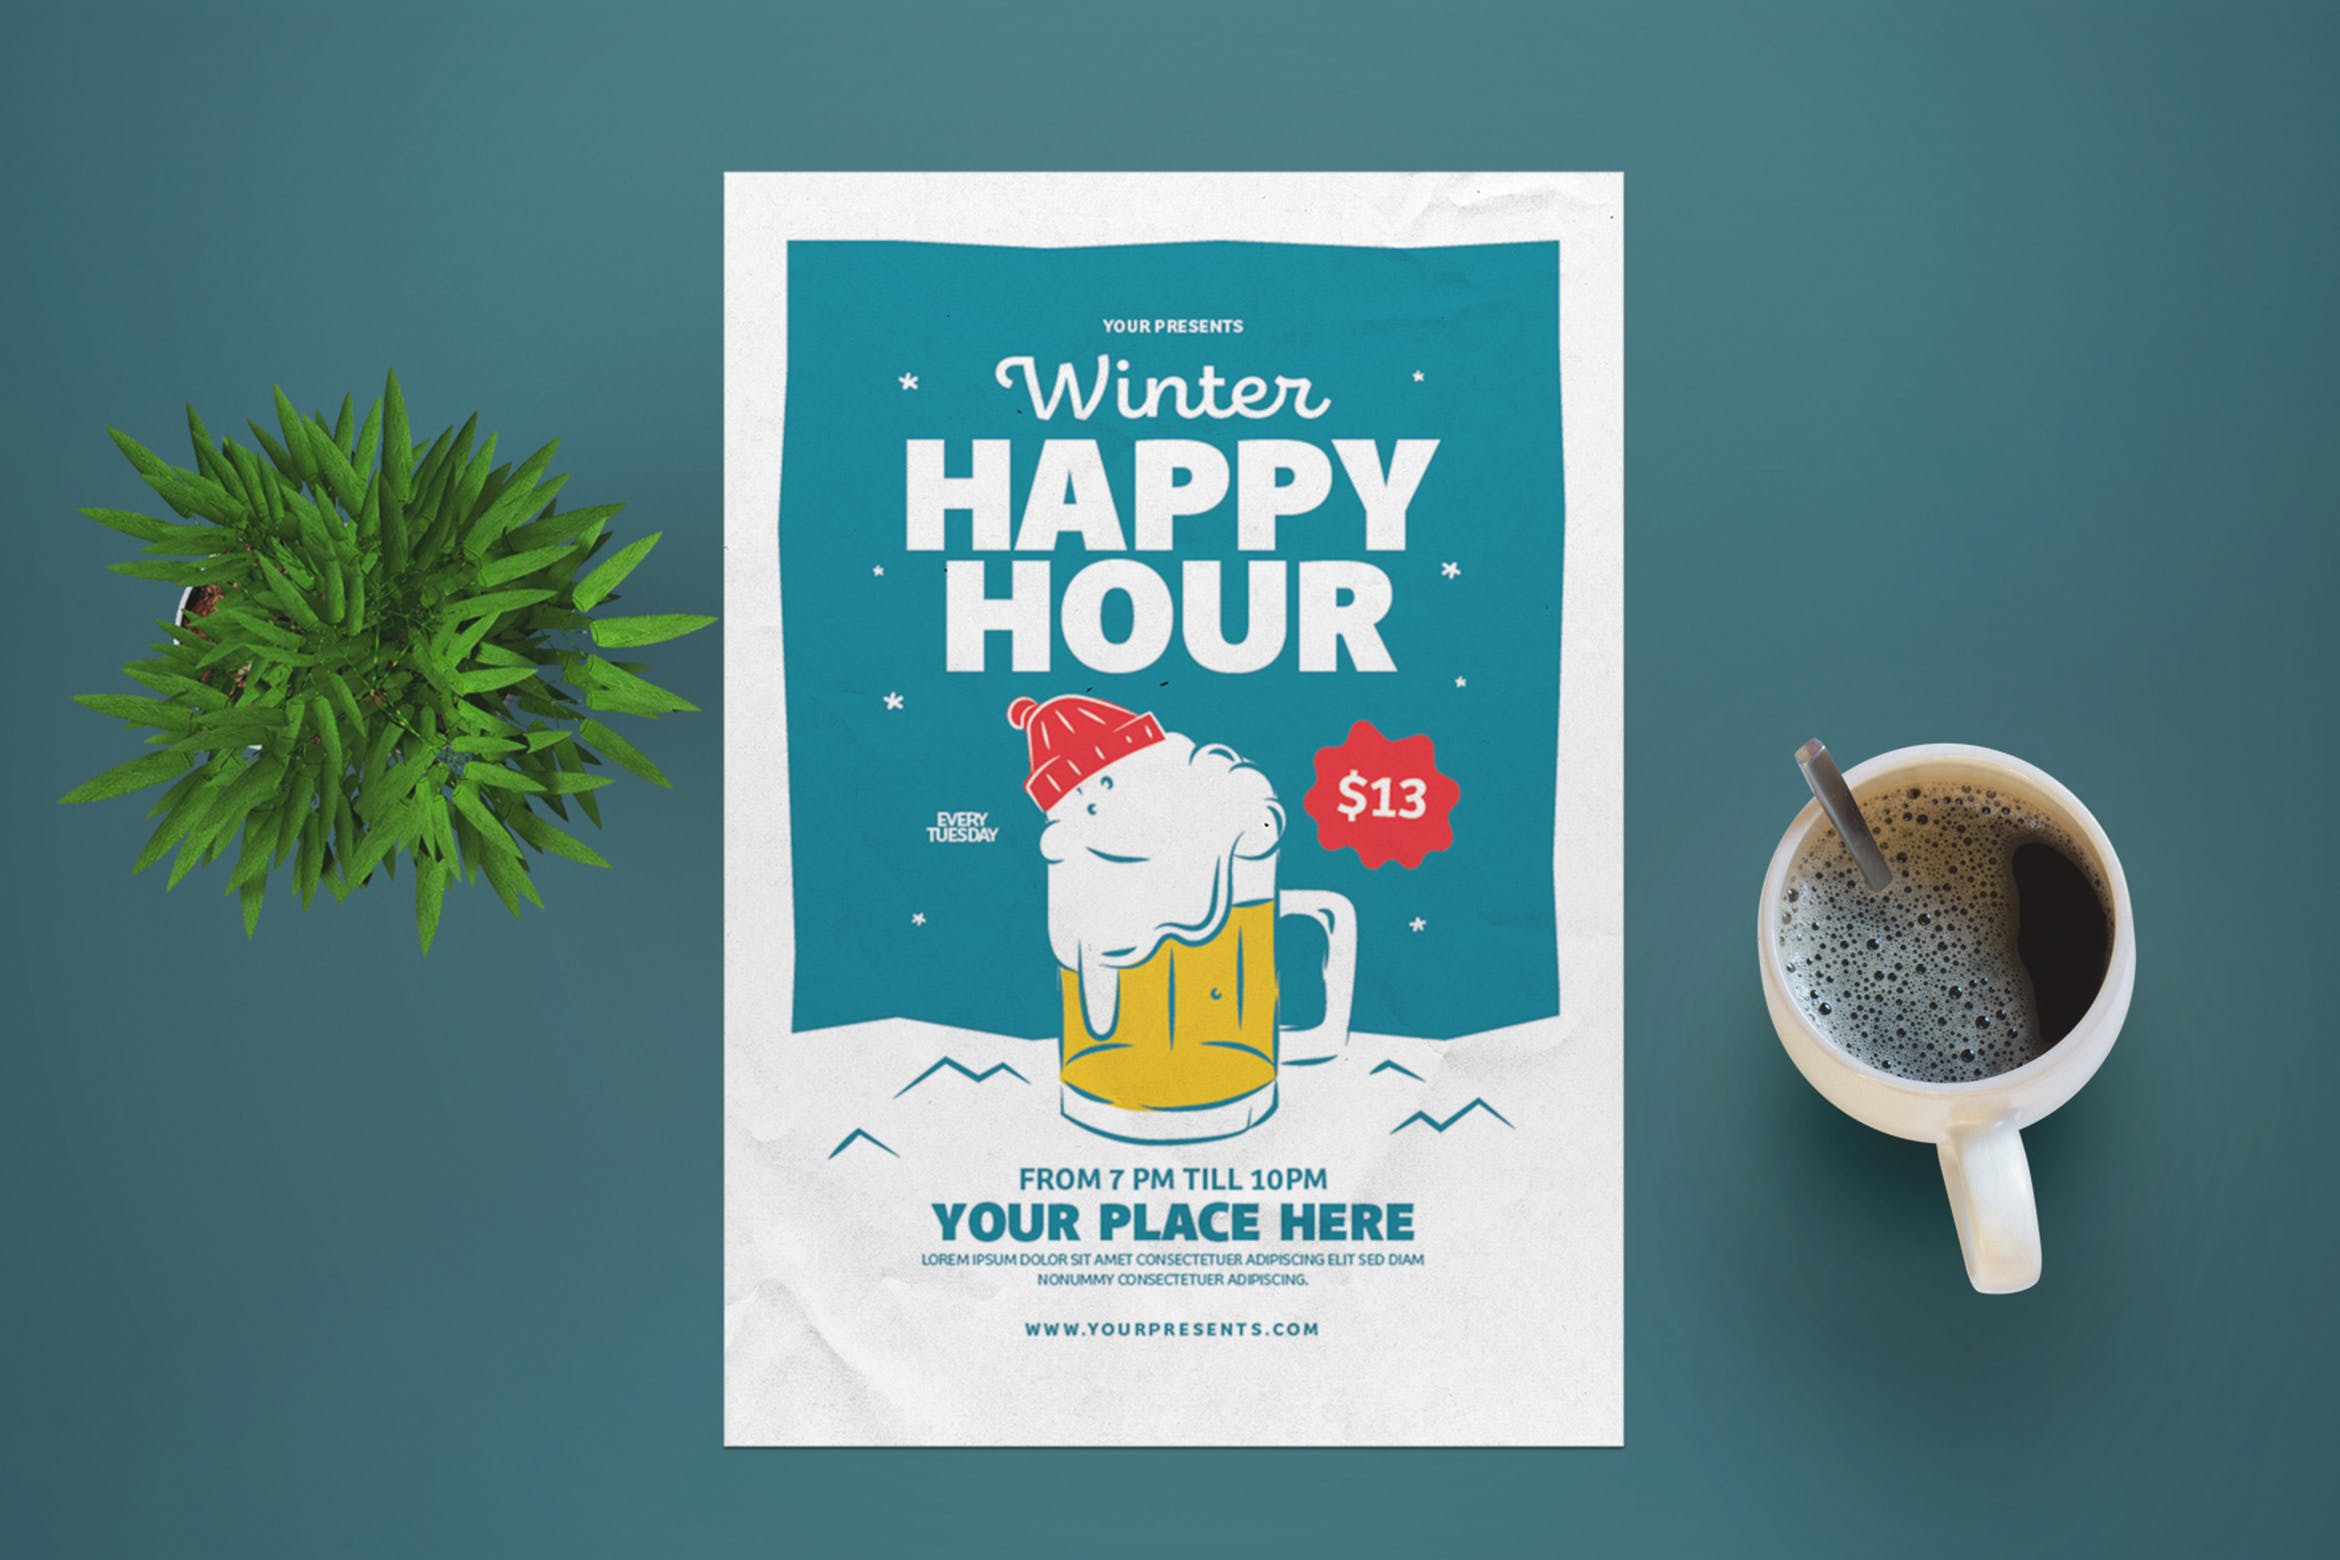 冬日酒吧海报传单设计模板 Winter Happy Hour Flyer插图